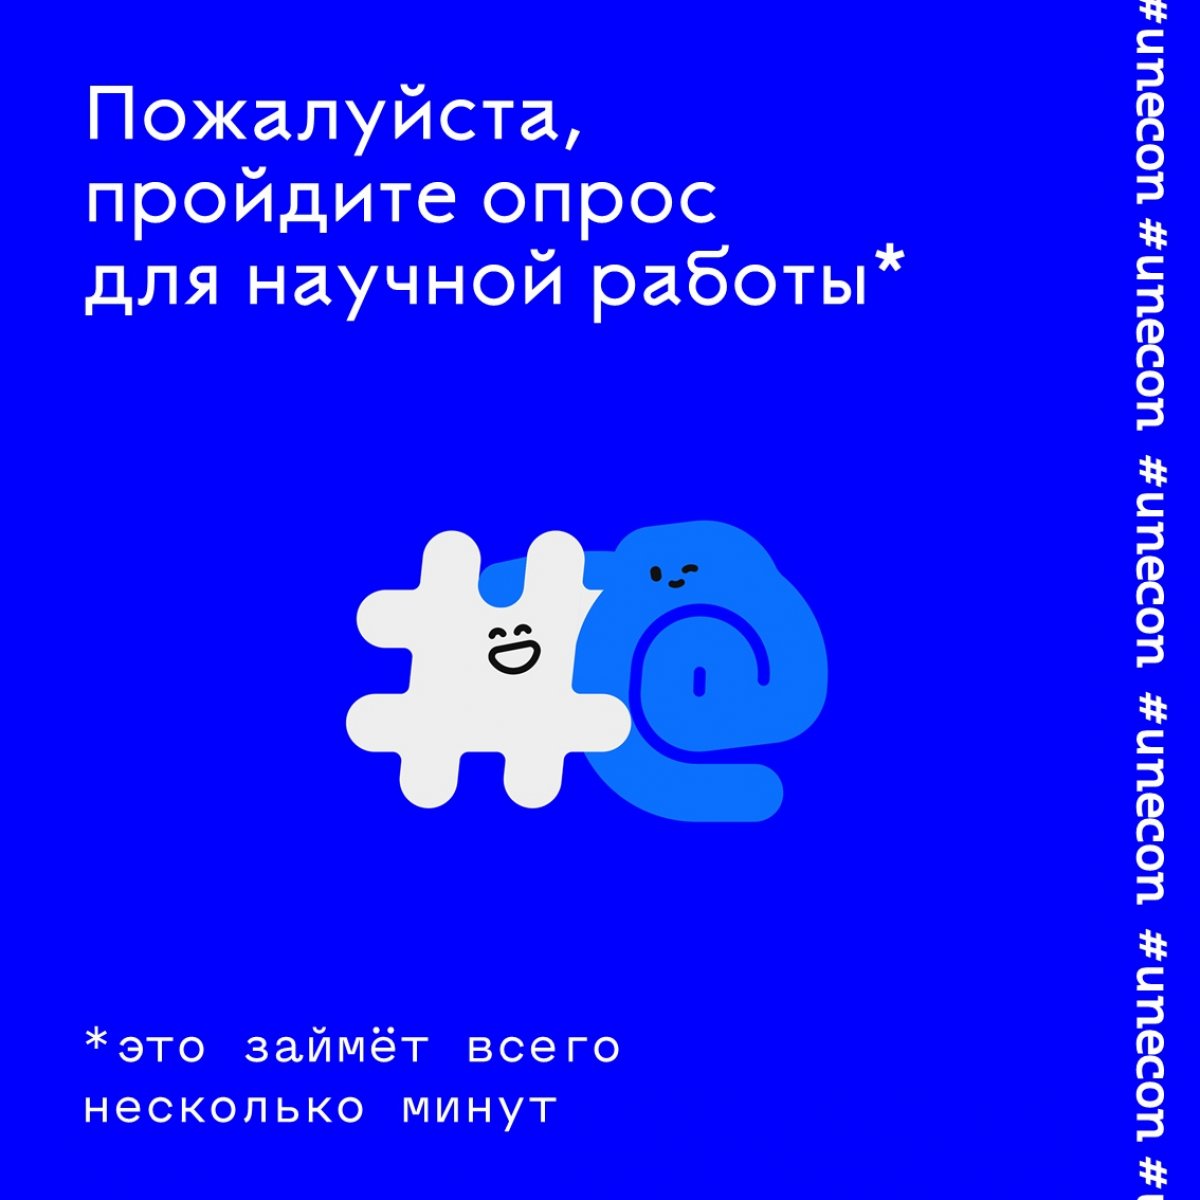 Если вы учитесь в СПбГЭУ и у вас есть аккаунт во ВКонтакте, то не проходите мимо и ответьте на вопросы этой анкеты.